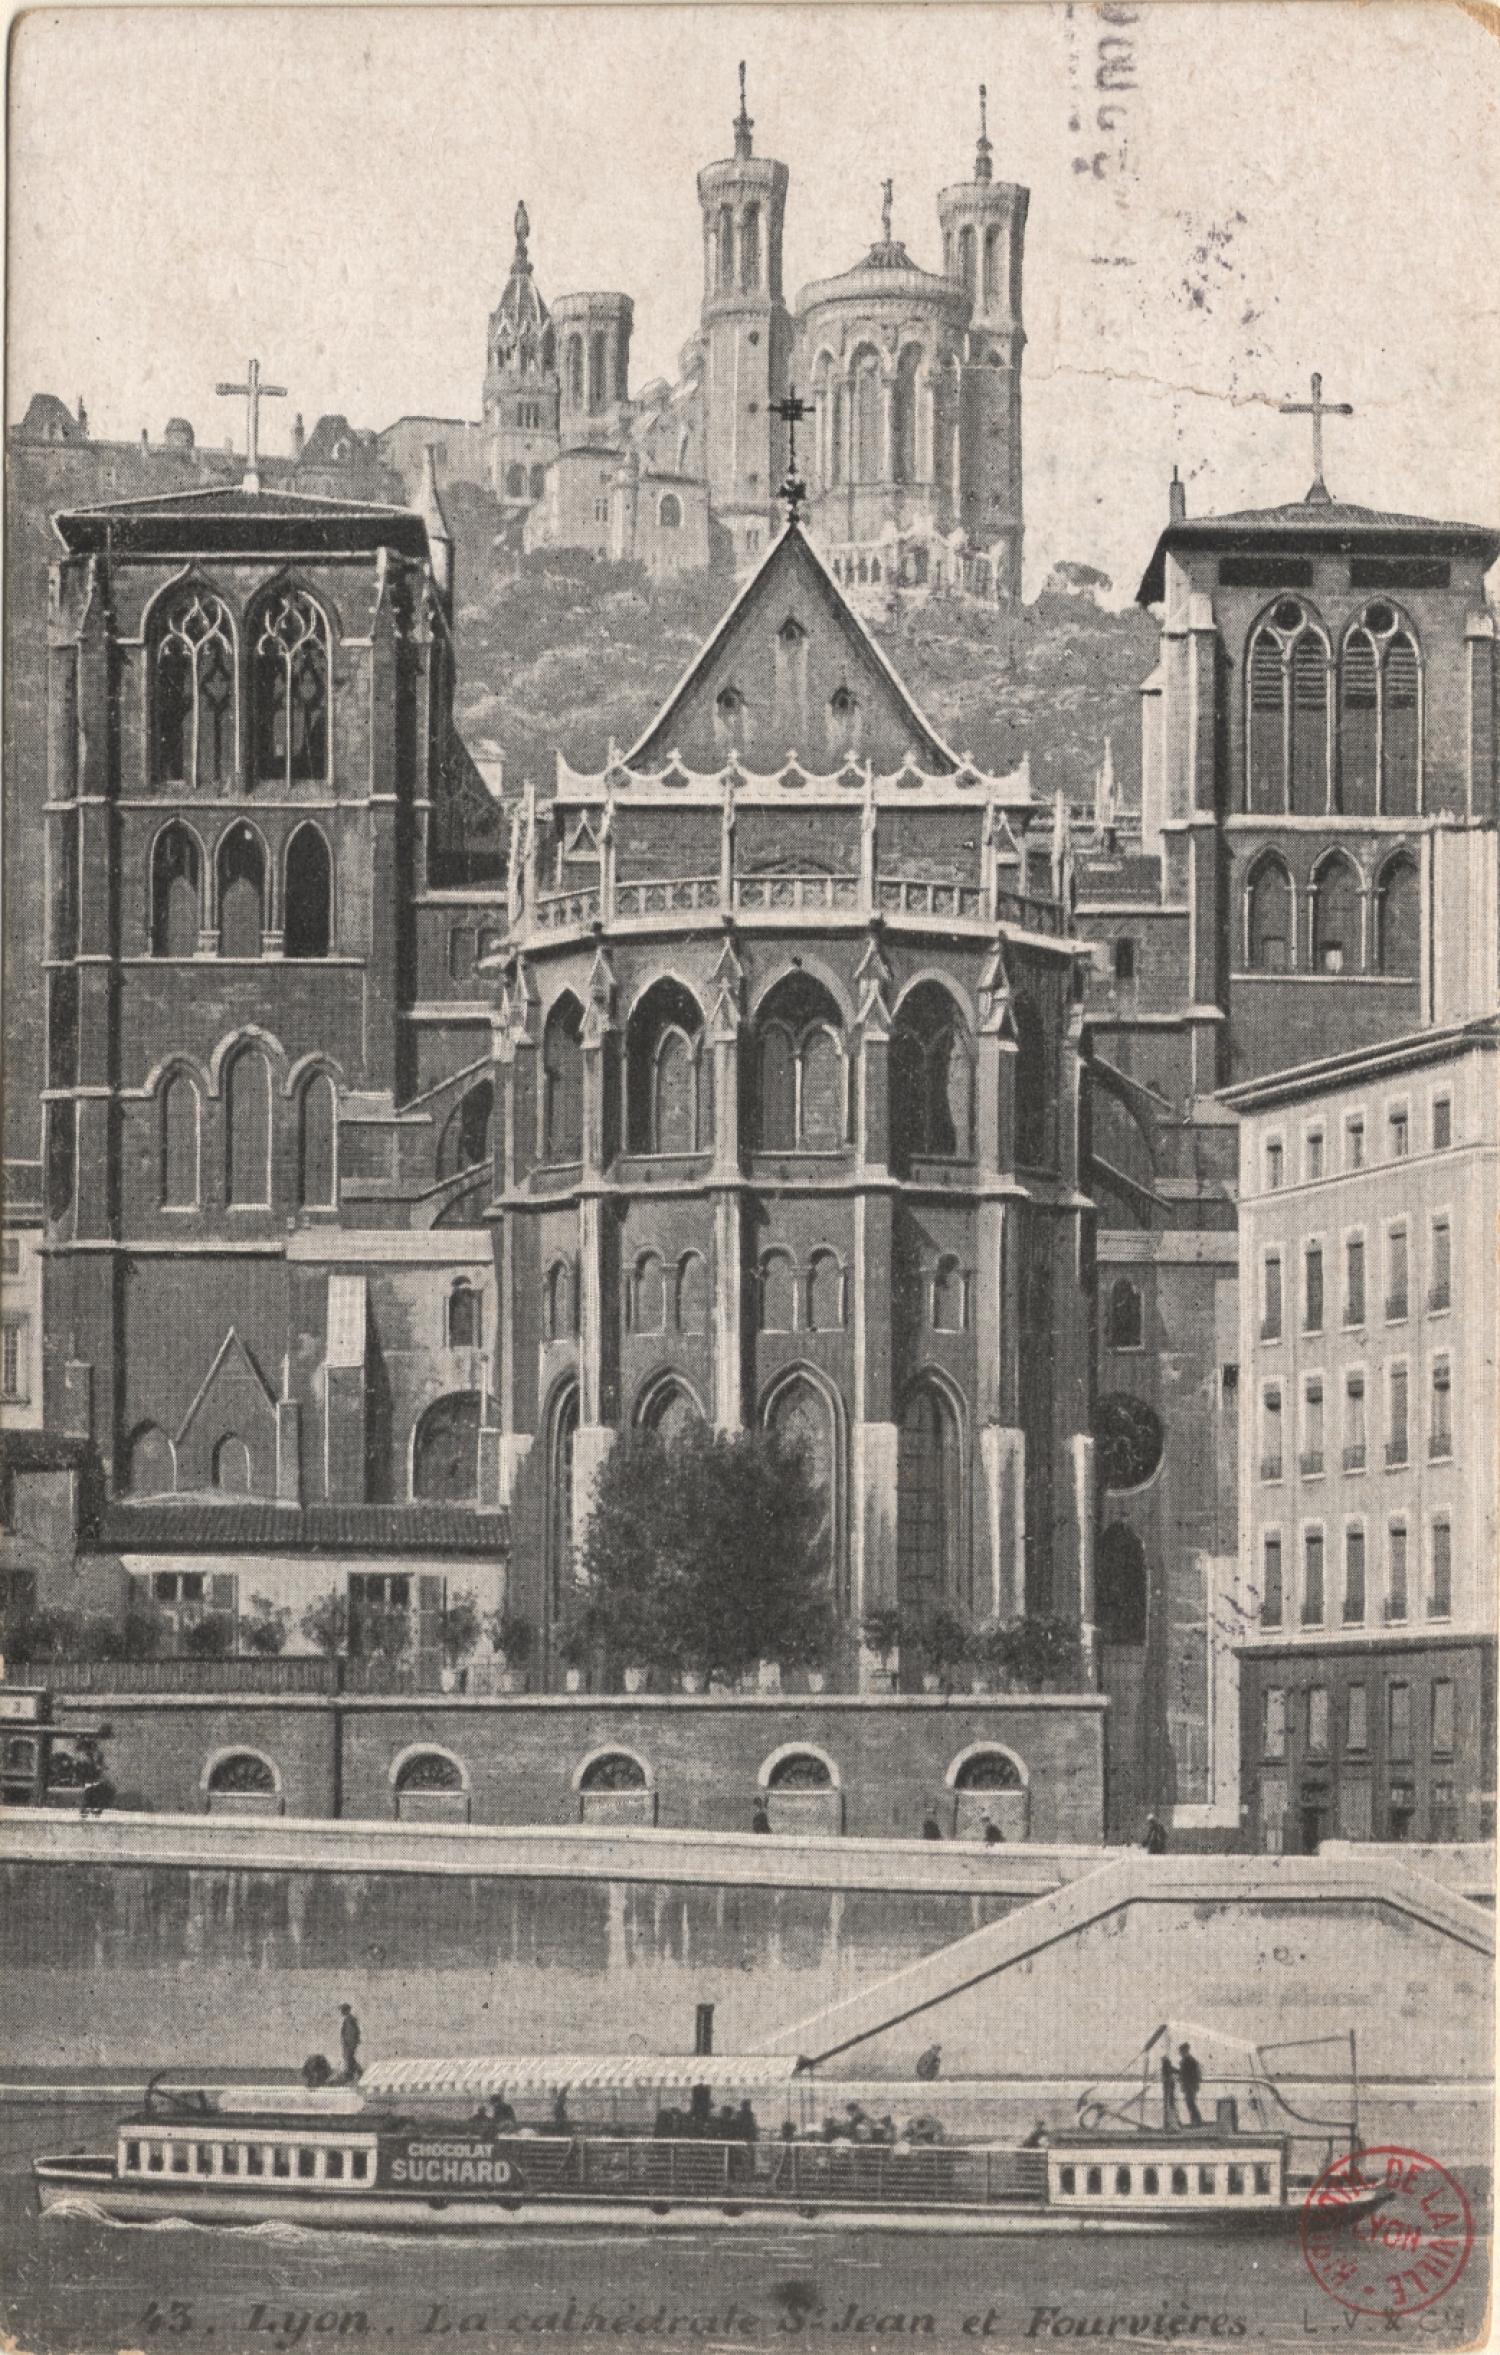 Lyon : La cathédrale St-Jean et Fourvière